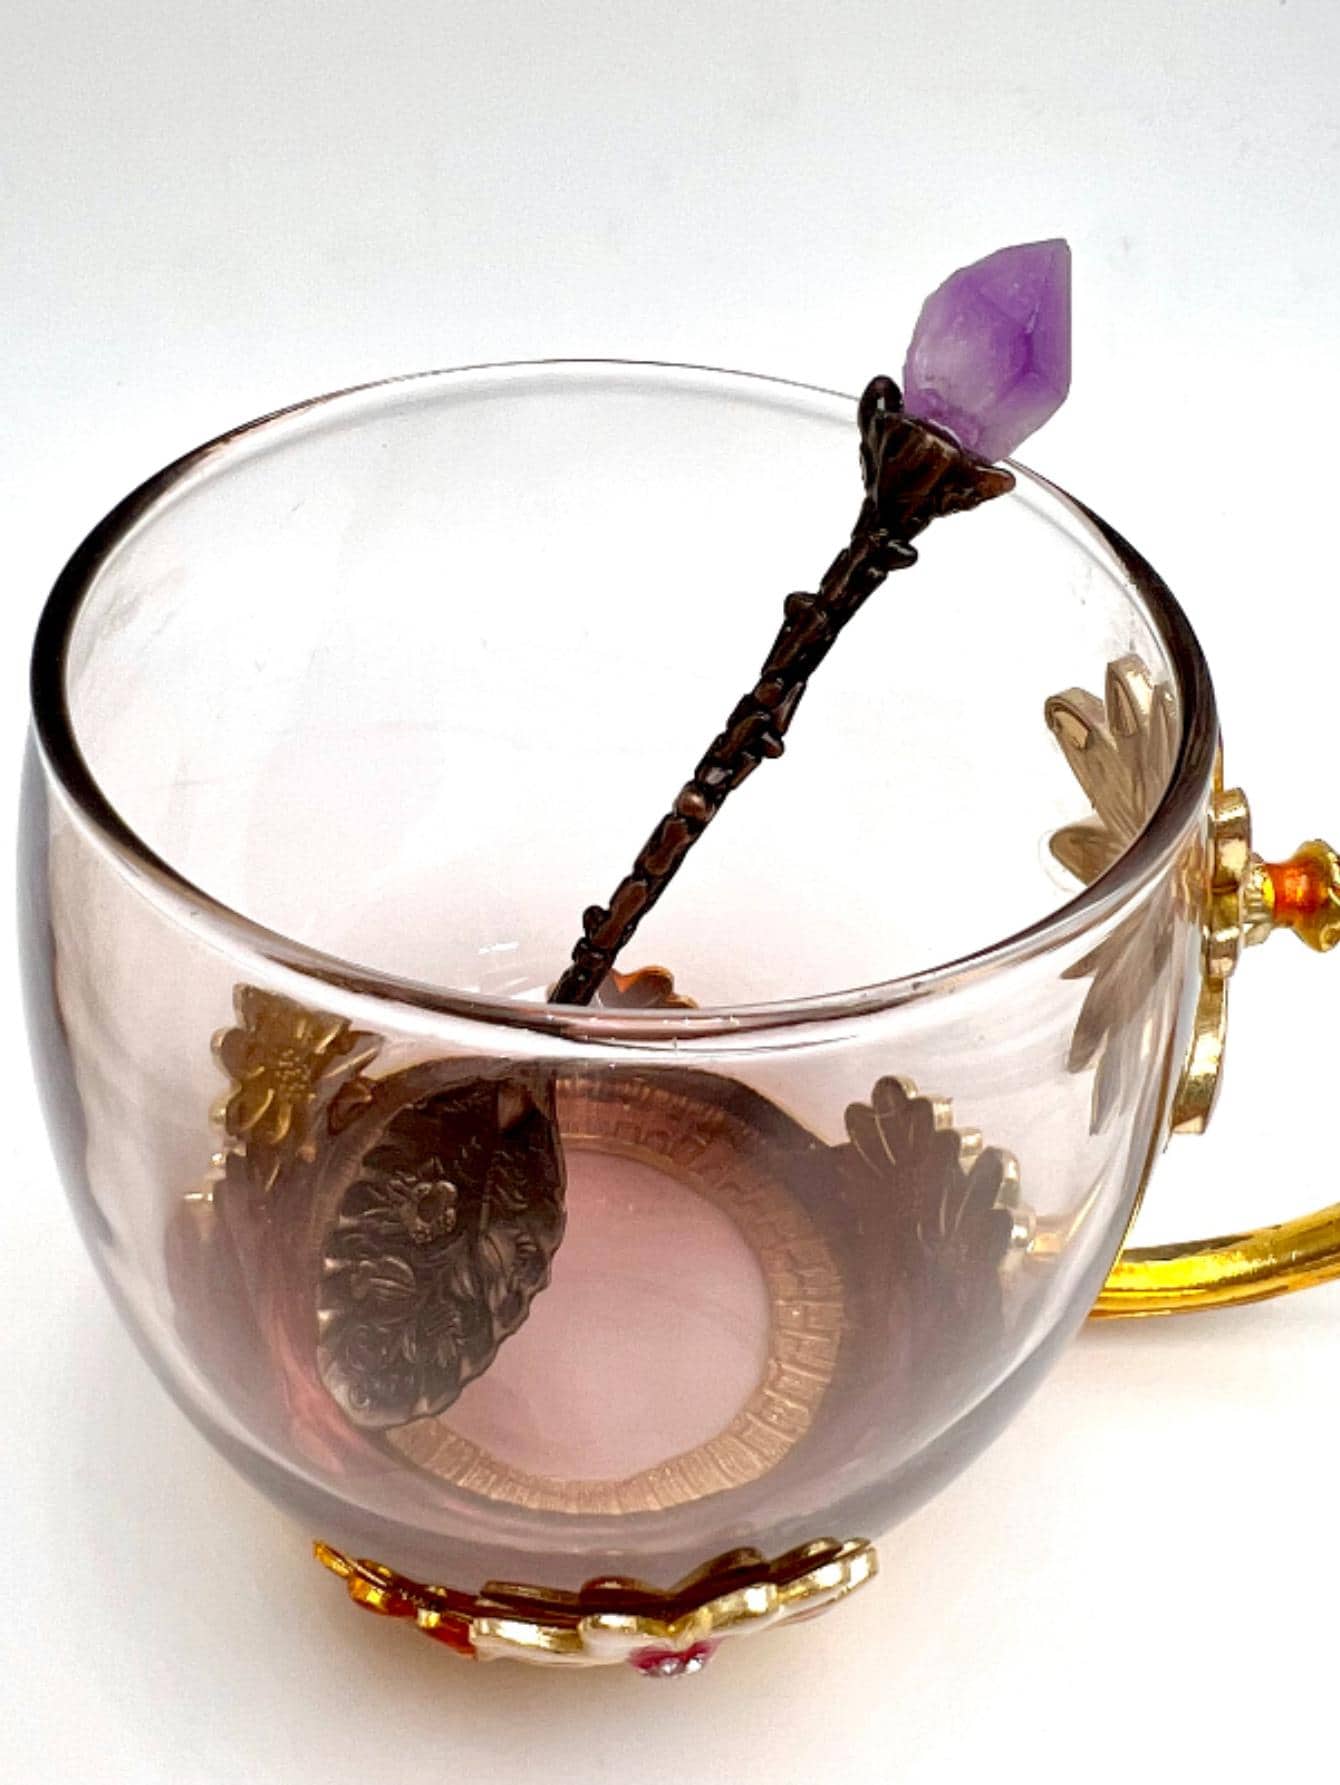 Cuchara de café agitadora tallada vintage de piedra preciosa cruda de cristal natural 1 pieza